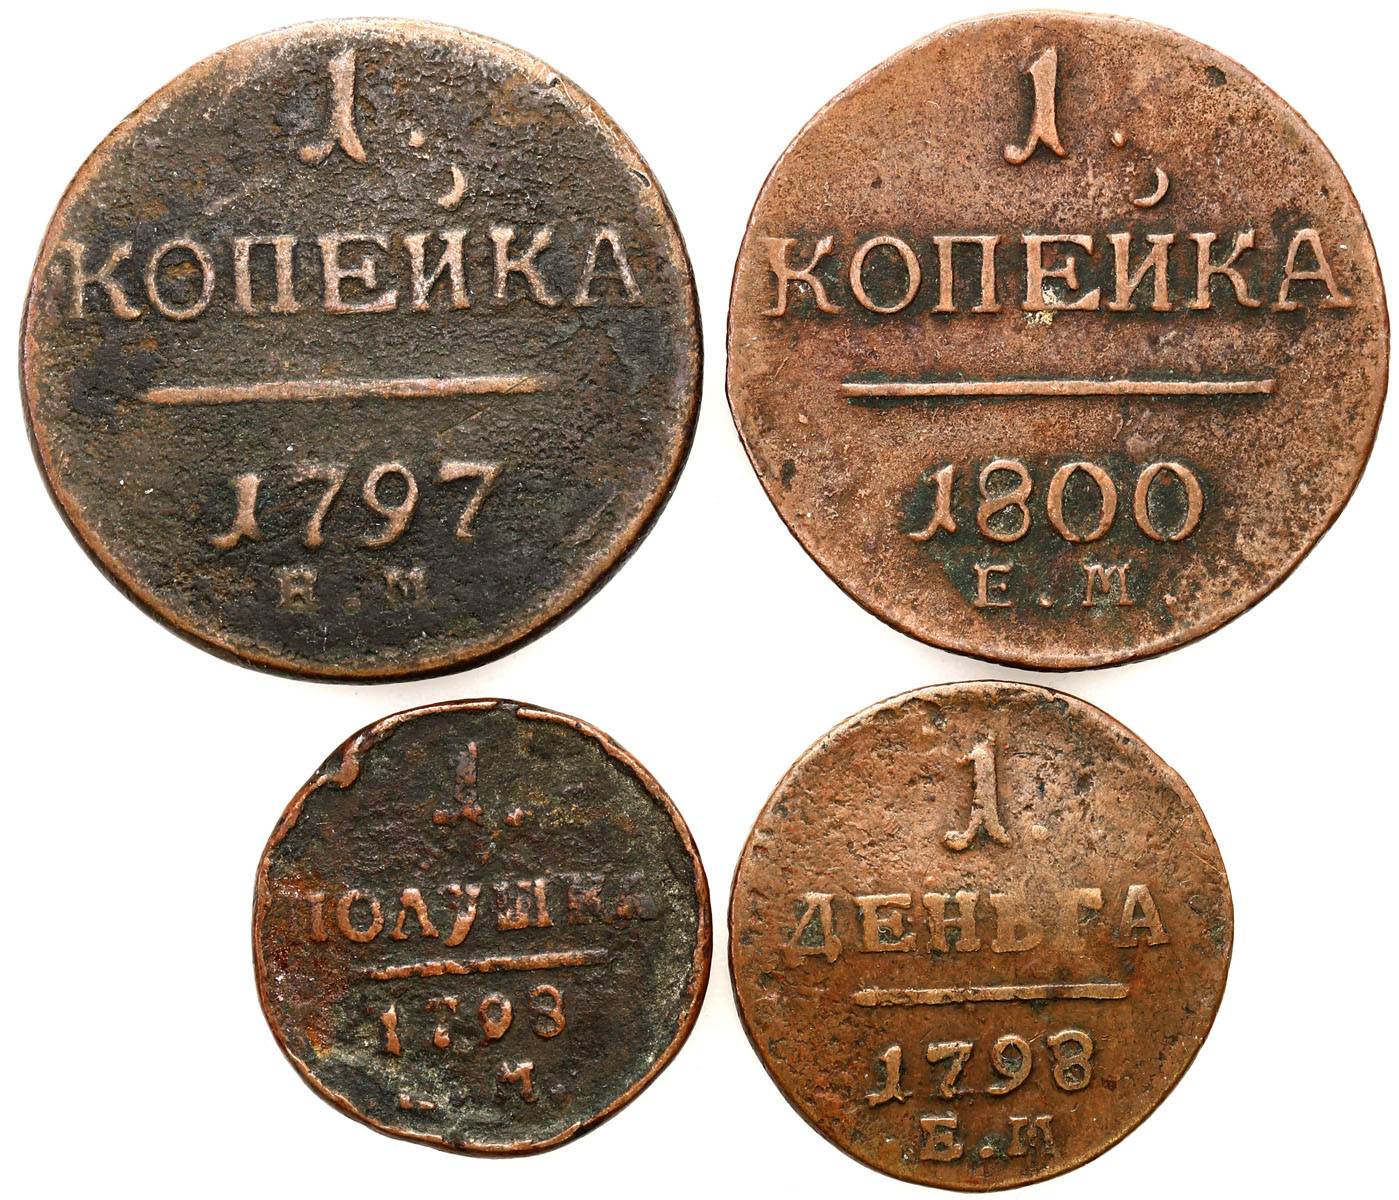 Rosja. Paweł I. połuszka - kopiejka 1797 - 1800 EM – zestaw 4 sztuk